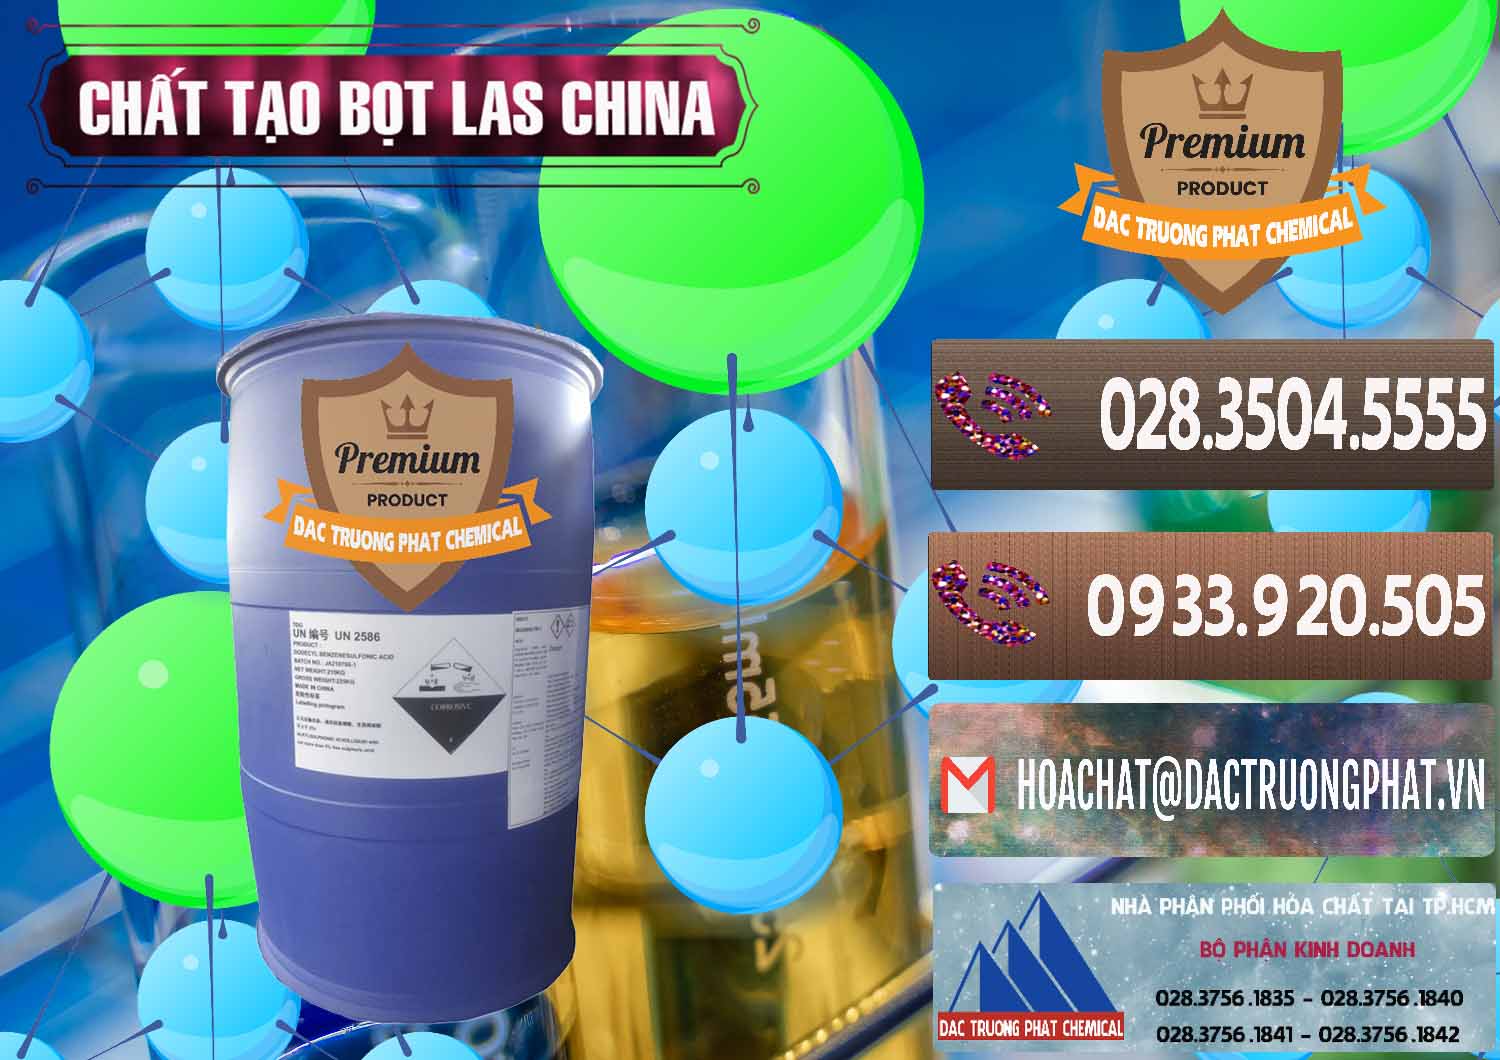 Nơi cung ứng & bán Chất tạo bọt Las Trung Quốc China - 0451 - Cty cung cấp _ kinh doanh hóa chất tại TP.HCM - hoachatviet.net